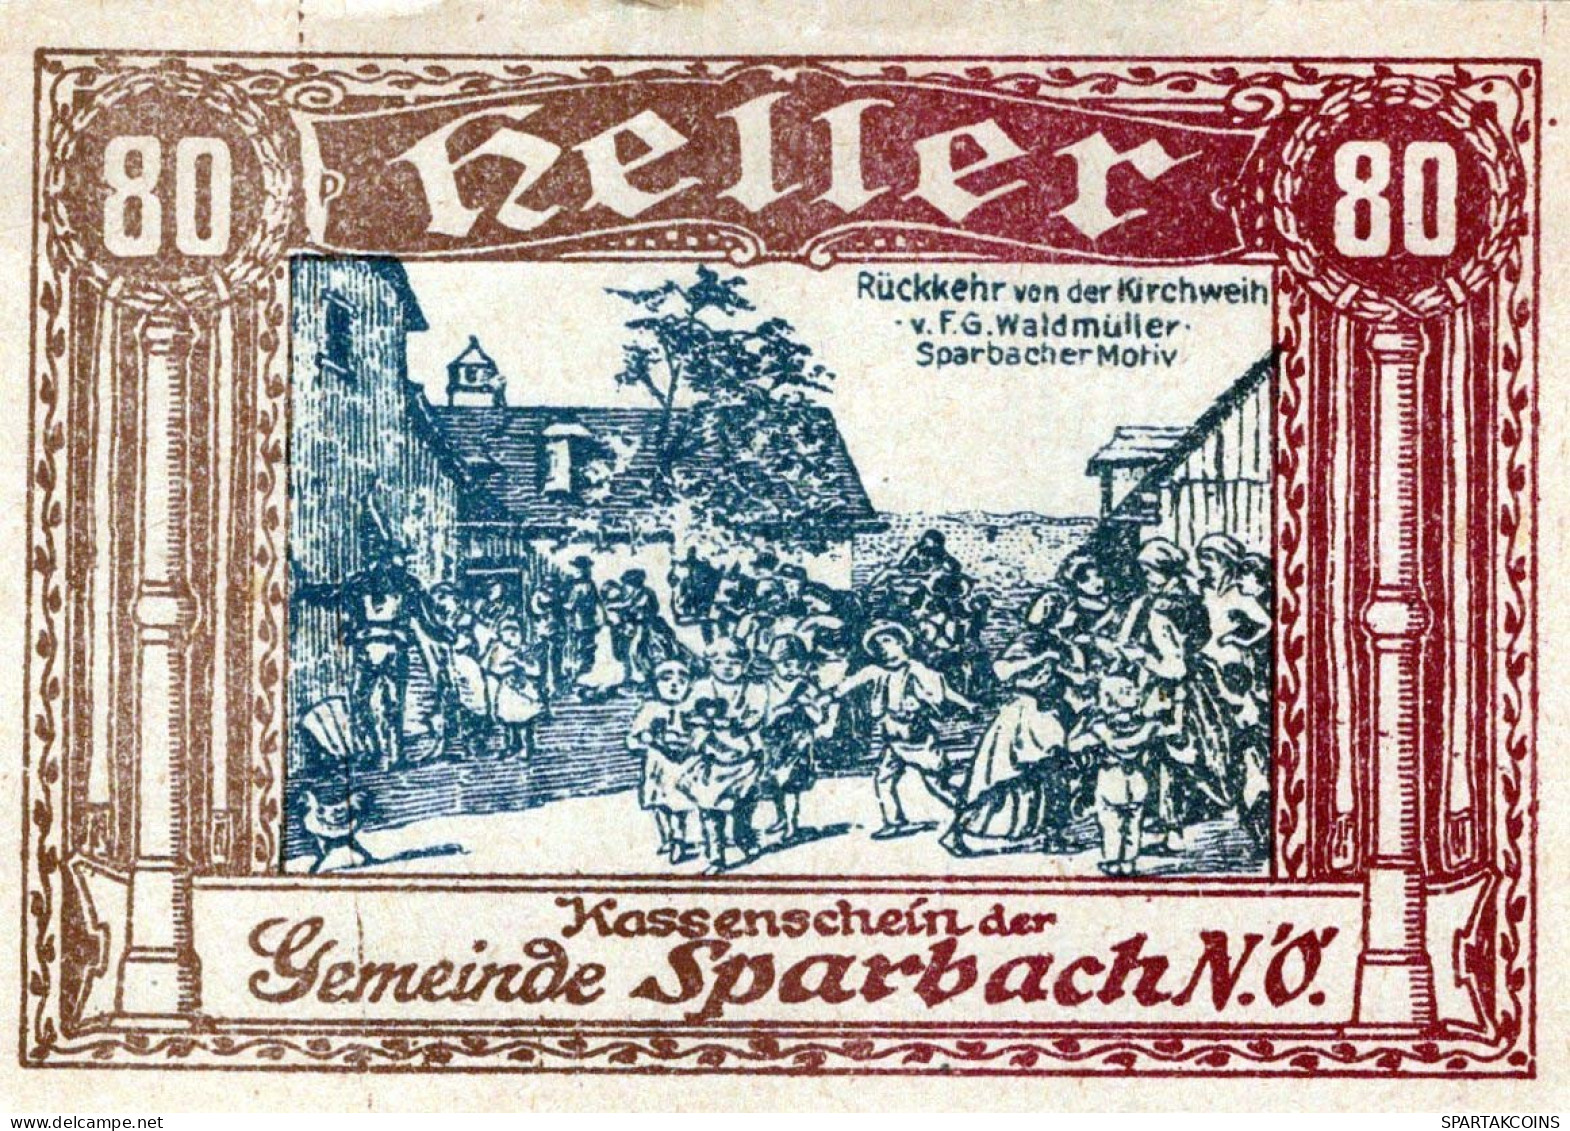 80 HELLER Stadt Sparbach Niedrigeren Österreich Notgeld Papiergeld Banknote #PG996 - [11] Emisiones Locales